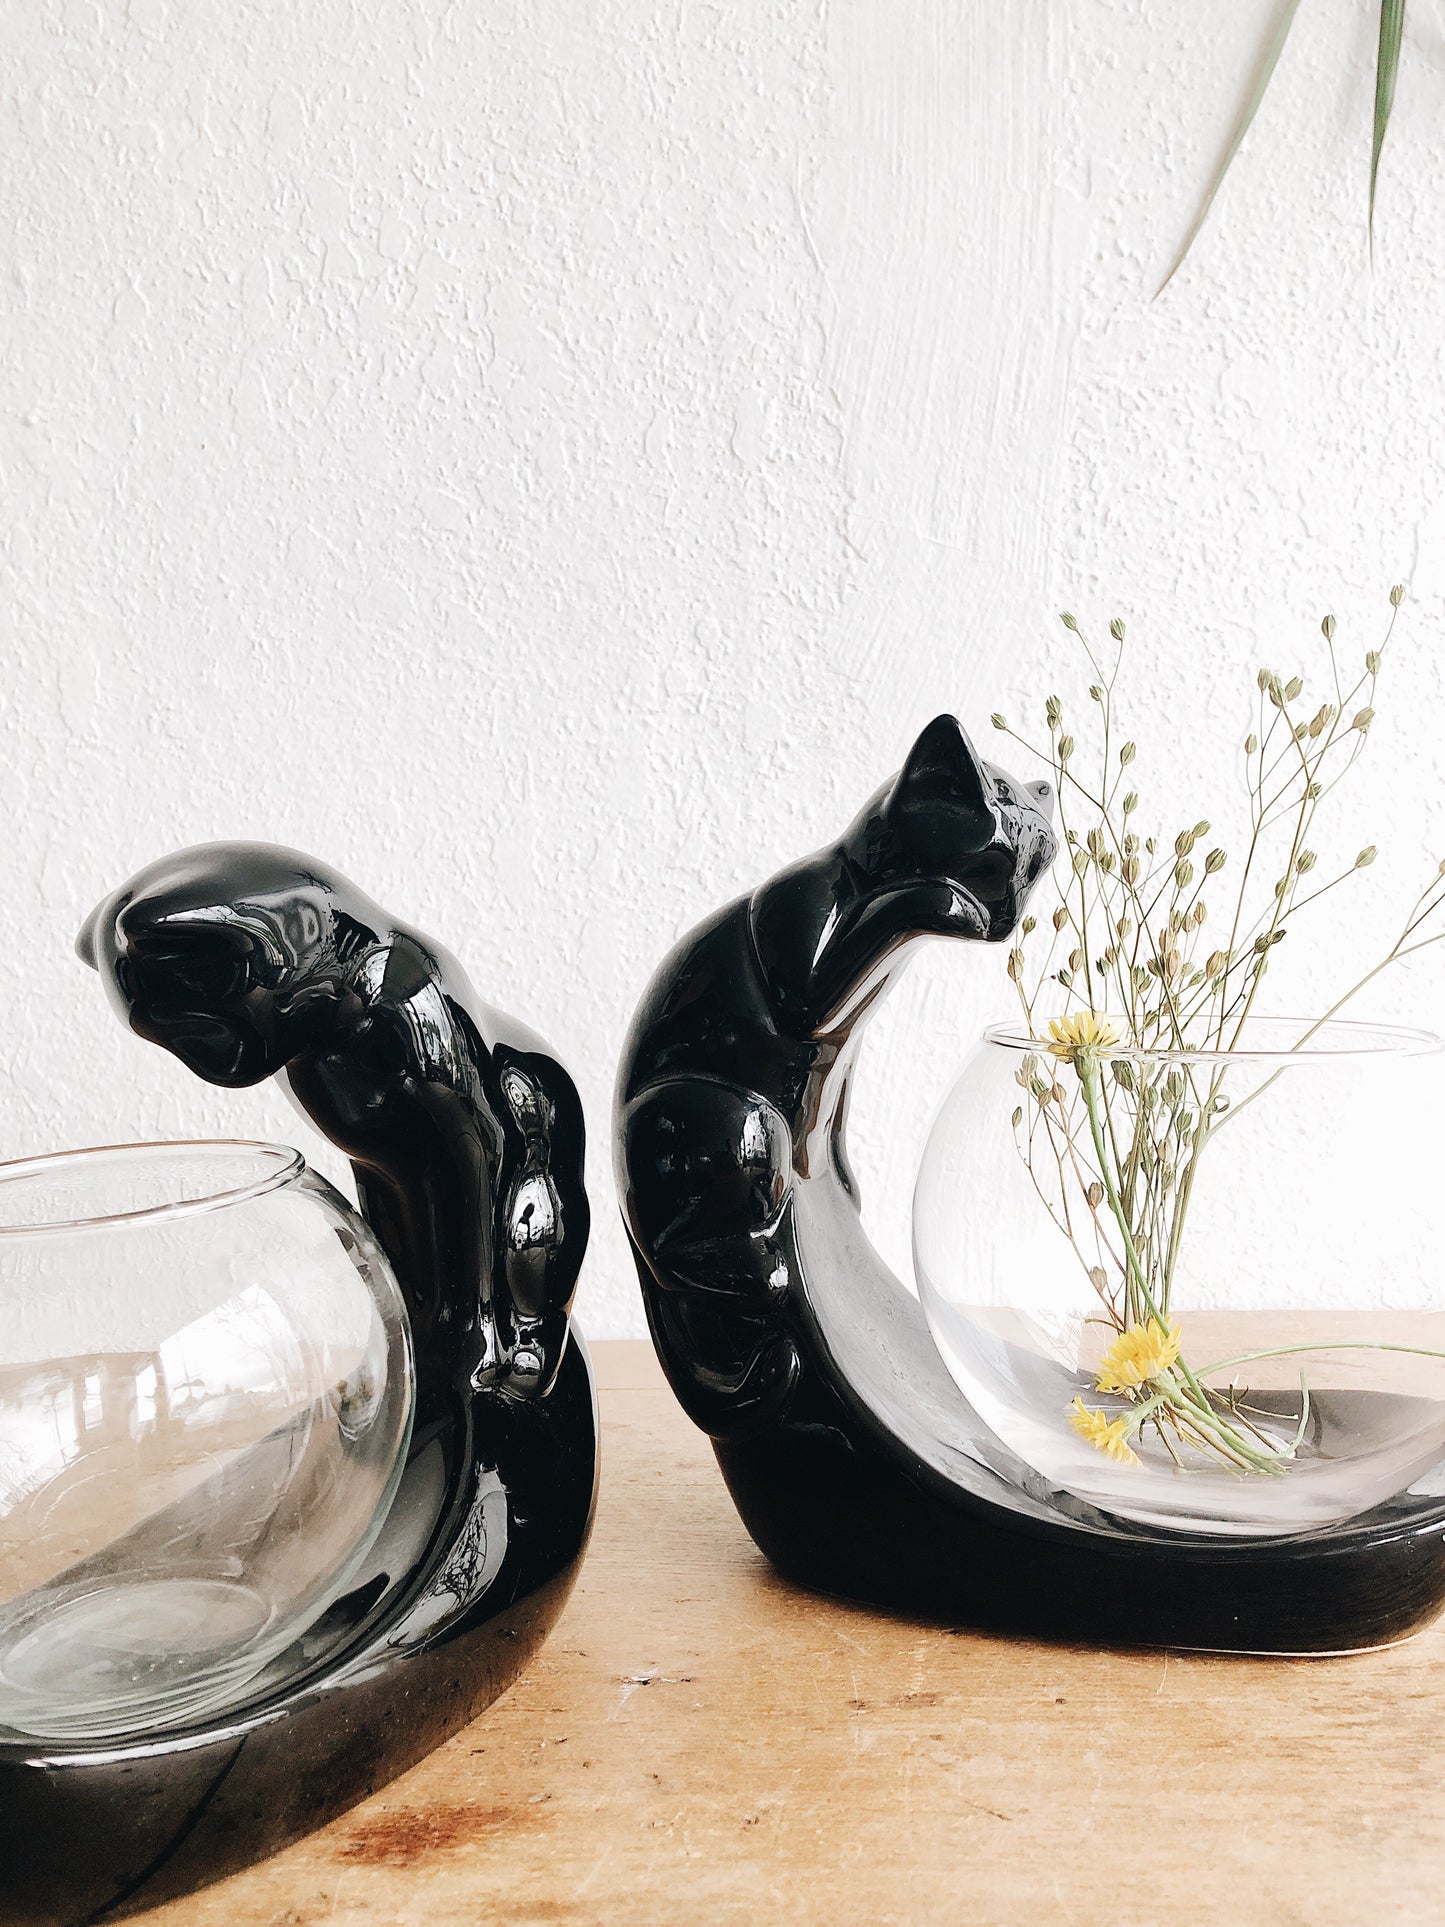 Vintage Ceramic Cat with Fishbowl Terrarium